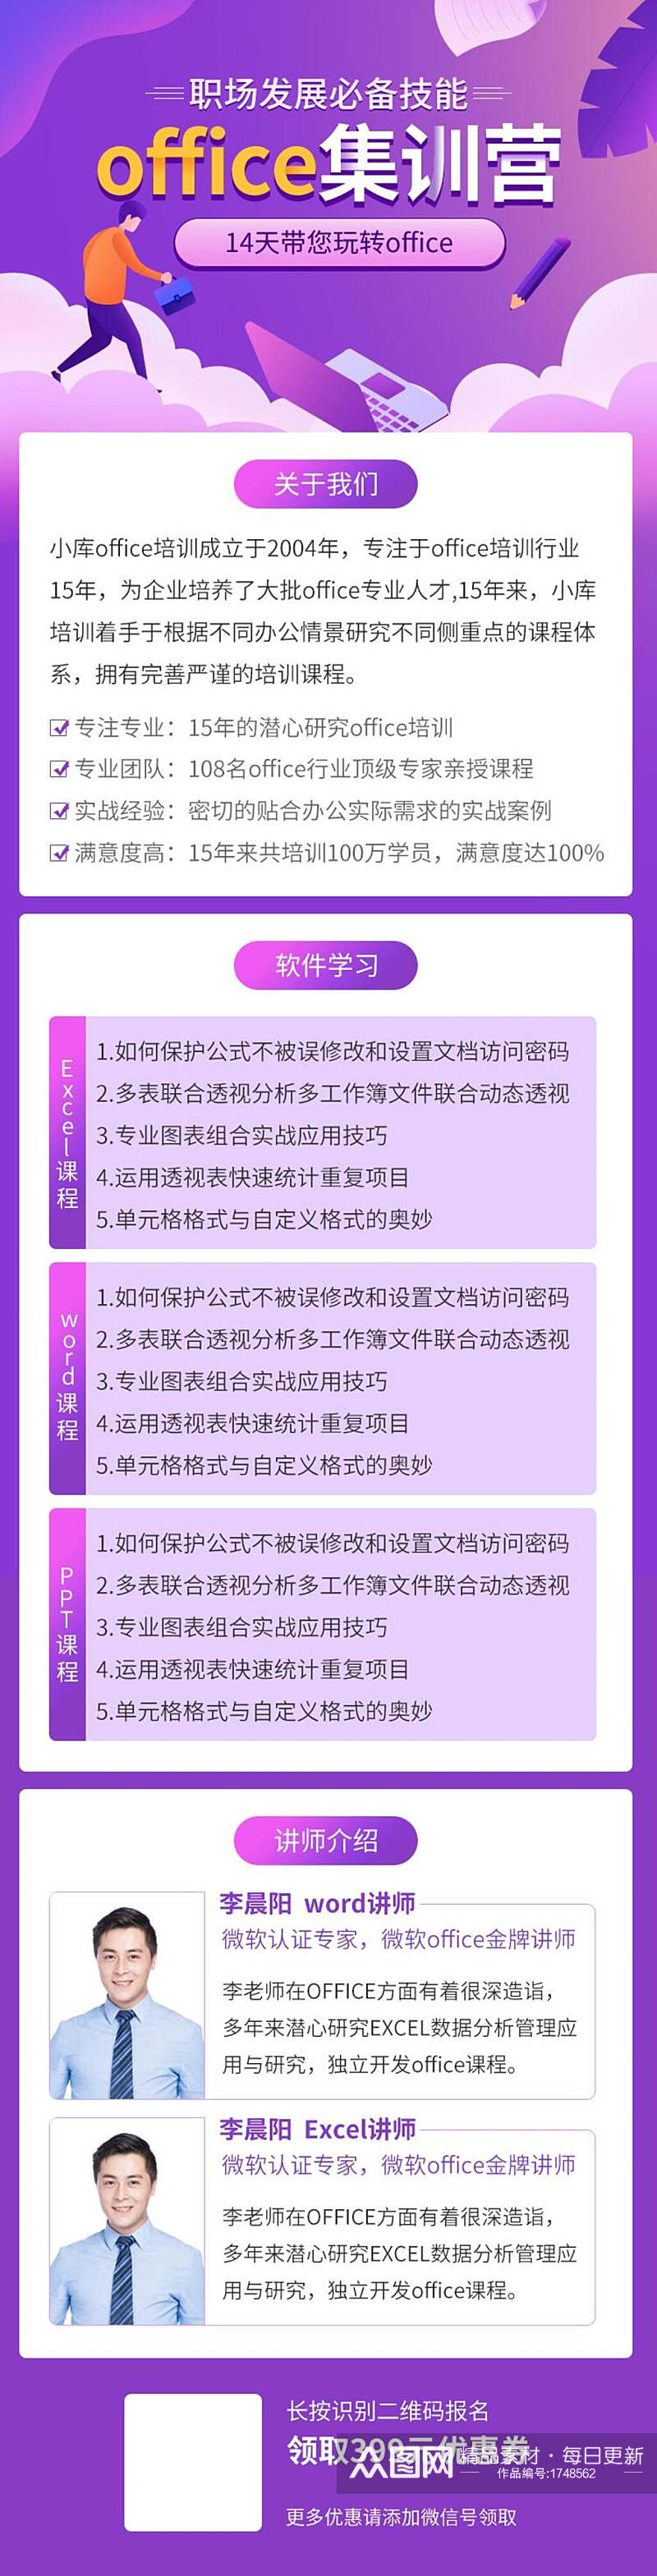 紫色office集训营教育培训H手机长图banner素材